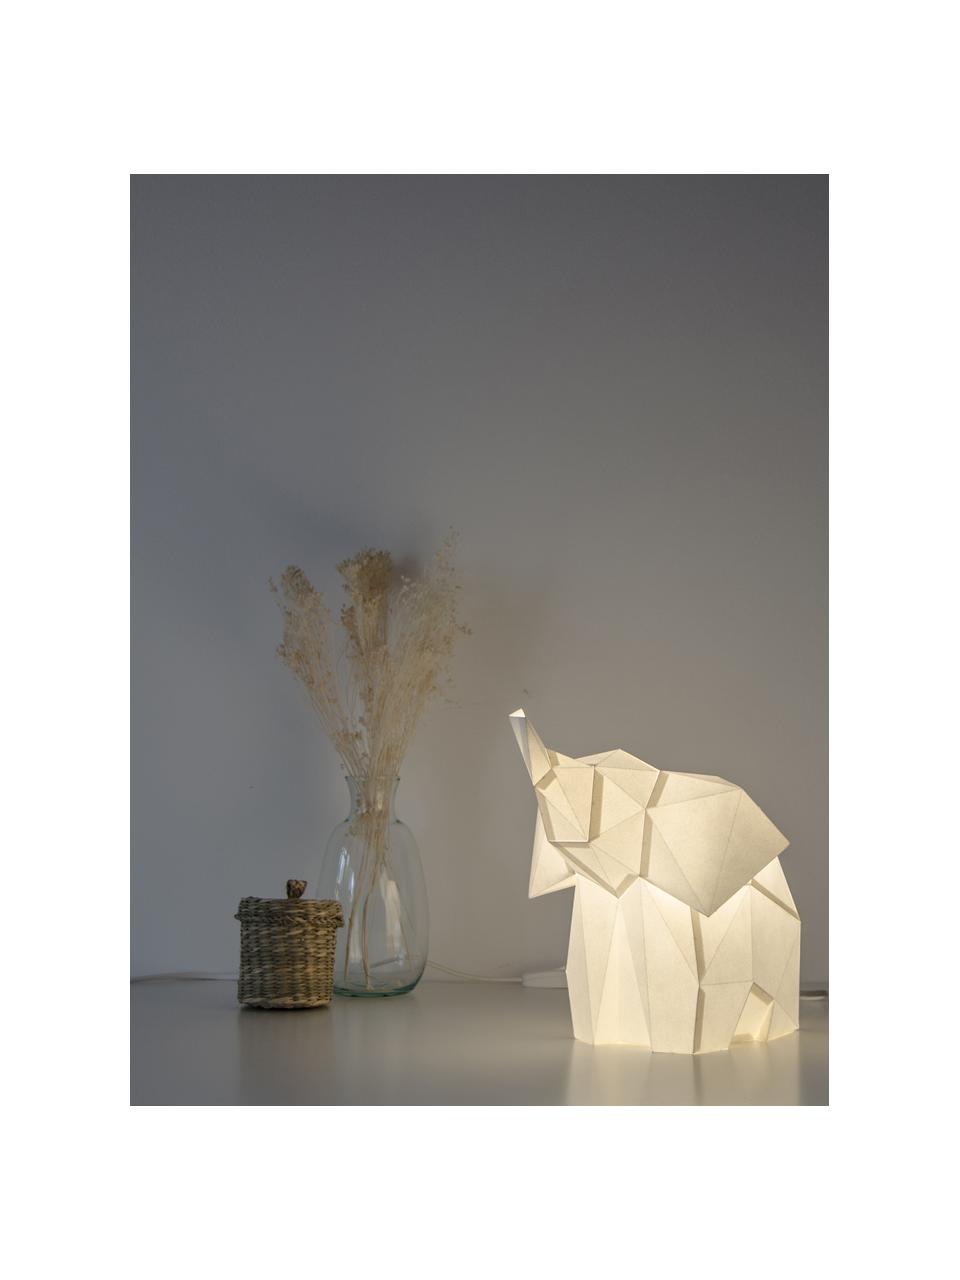 Tischleuchte Baby Elephant, Bausatz aus Papier, Lampenschirm: Papier, 160 g/m², Sockel: Holzfaserplatte und Kunst, Weiss, 23 x 24 cm